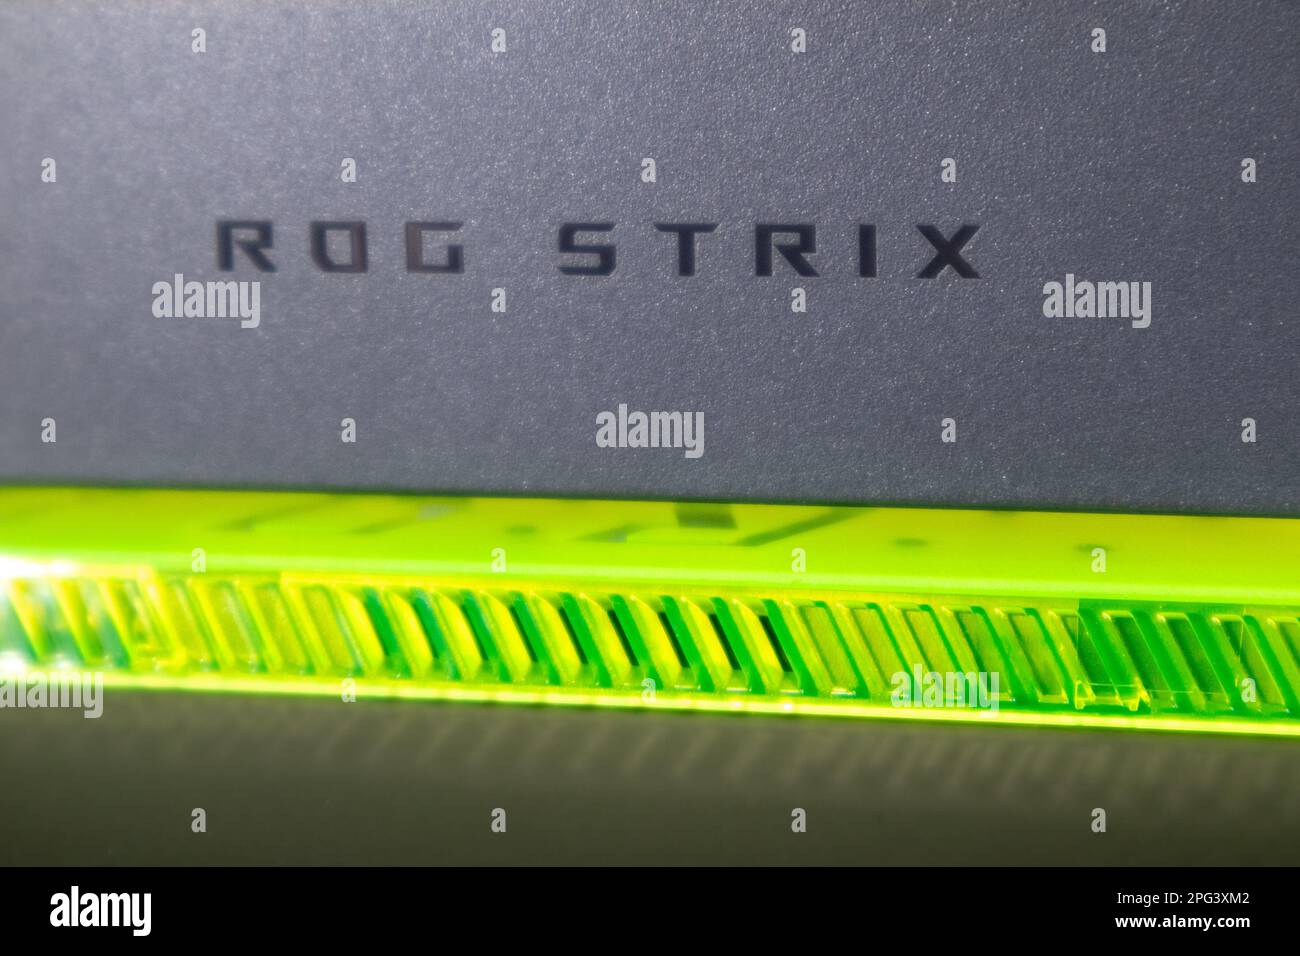 Kiew, Ukraine - 28. August 2022: ROG Strix G17 (Republik der Gamer) Gaming-Notebook von ASUS mit grünem Designelement. Notizbuchdetails. Technik, IT, Stockfoto